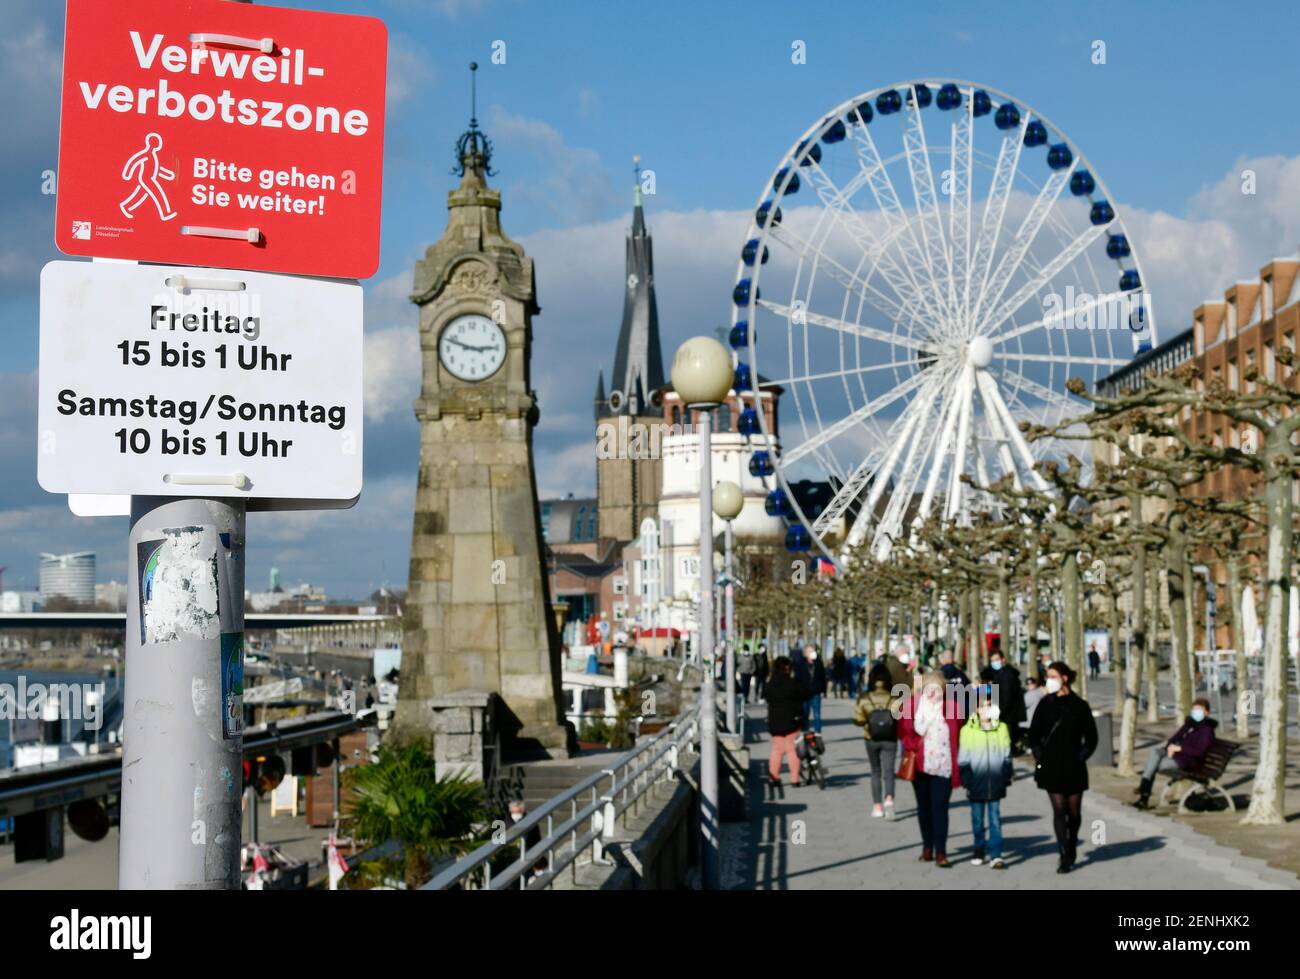 Düsseldorf, NRW Allemagne, 26 février 2021, Corona, "S'il vous plaît marcher dessus": En raison de la foule des gens le week-end dernier, la ville de Düsseldorf a imposé une interdiction sur la promenade du Rhin dans la vieille ville. Cela s'applique le vendredi de 3 h 00 à 1 h 00 et le samedi/dimanche de 10 h 00 à 1 h 00. Il est toujours de 14 h 50 le vendredi et les gens utilisent le temps sur les bancs du parc. Banque D'Images